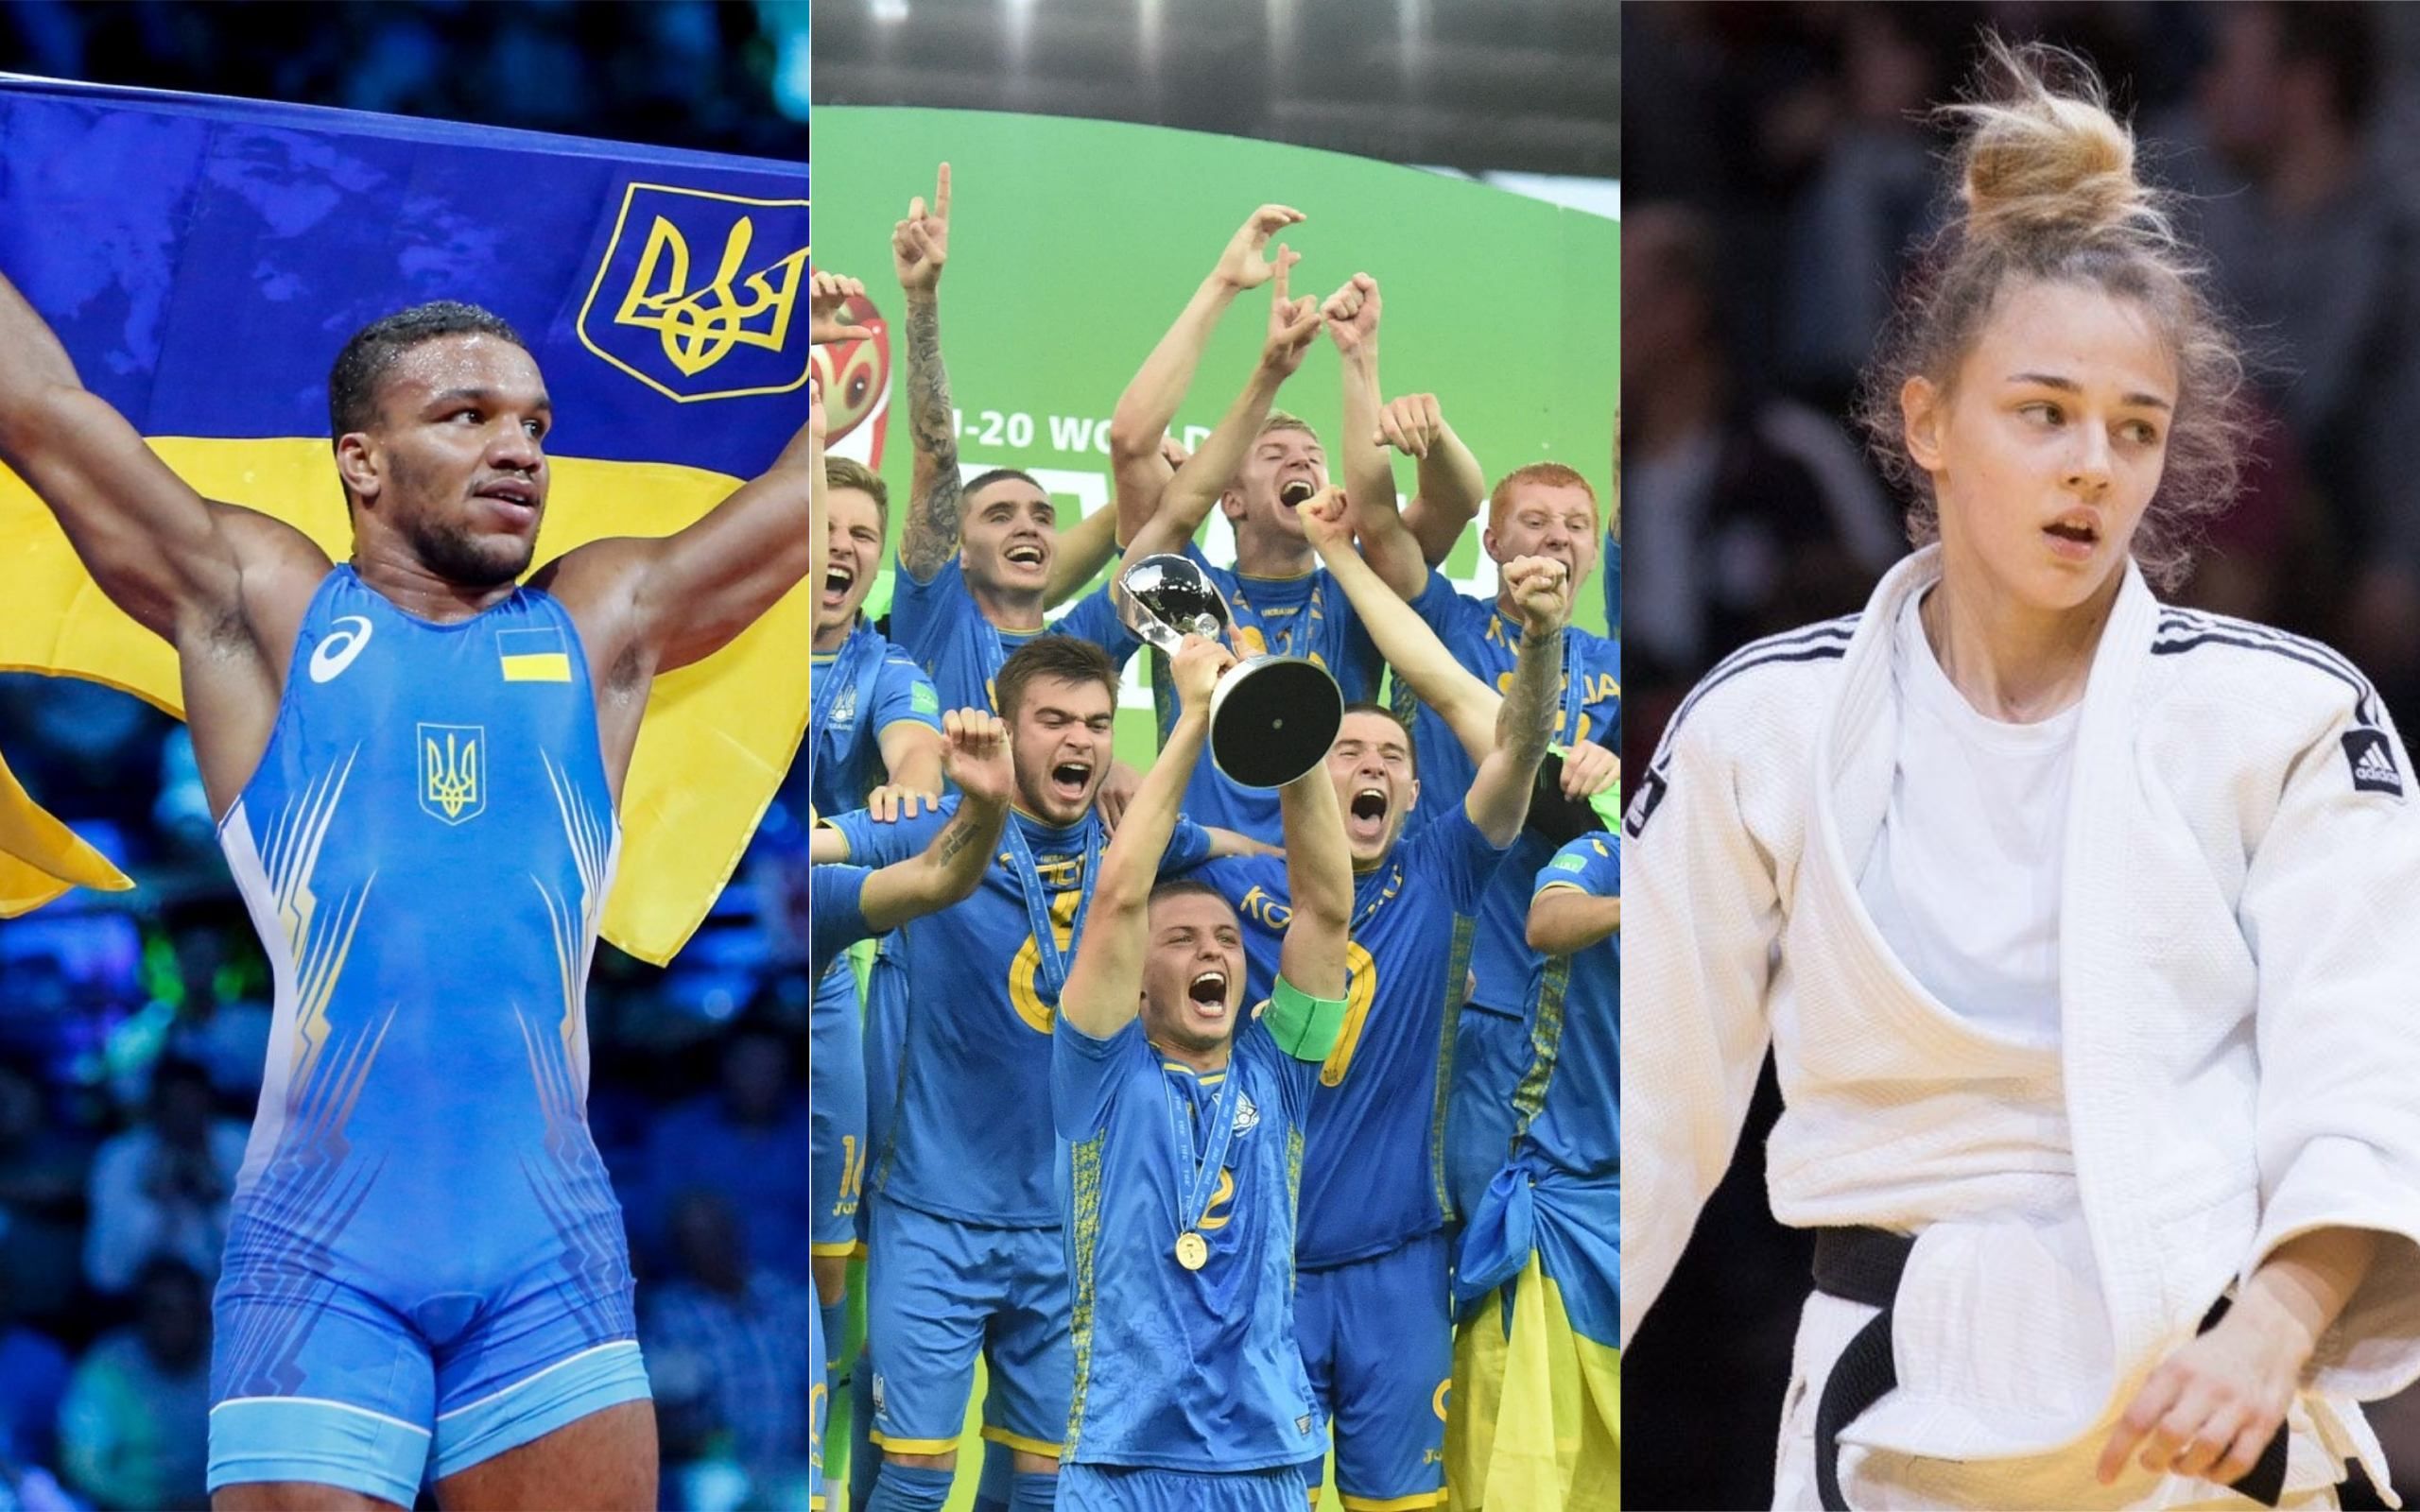 Беленюк, Билодид, сборная по футболу U20: спортивные герои Украины 2019